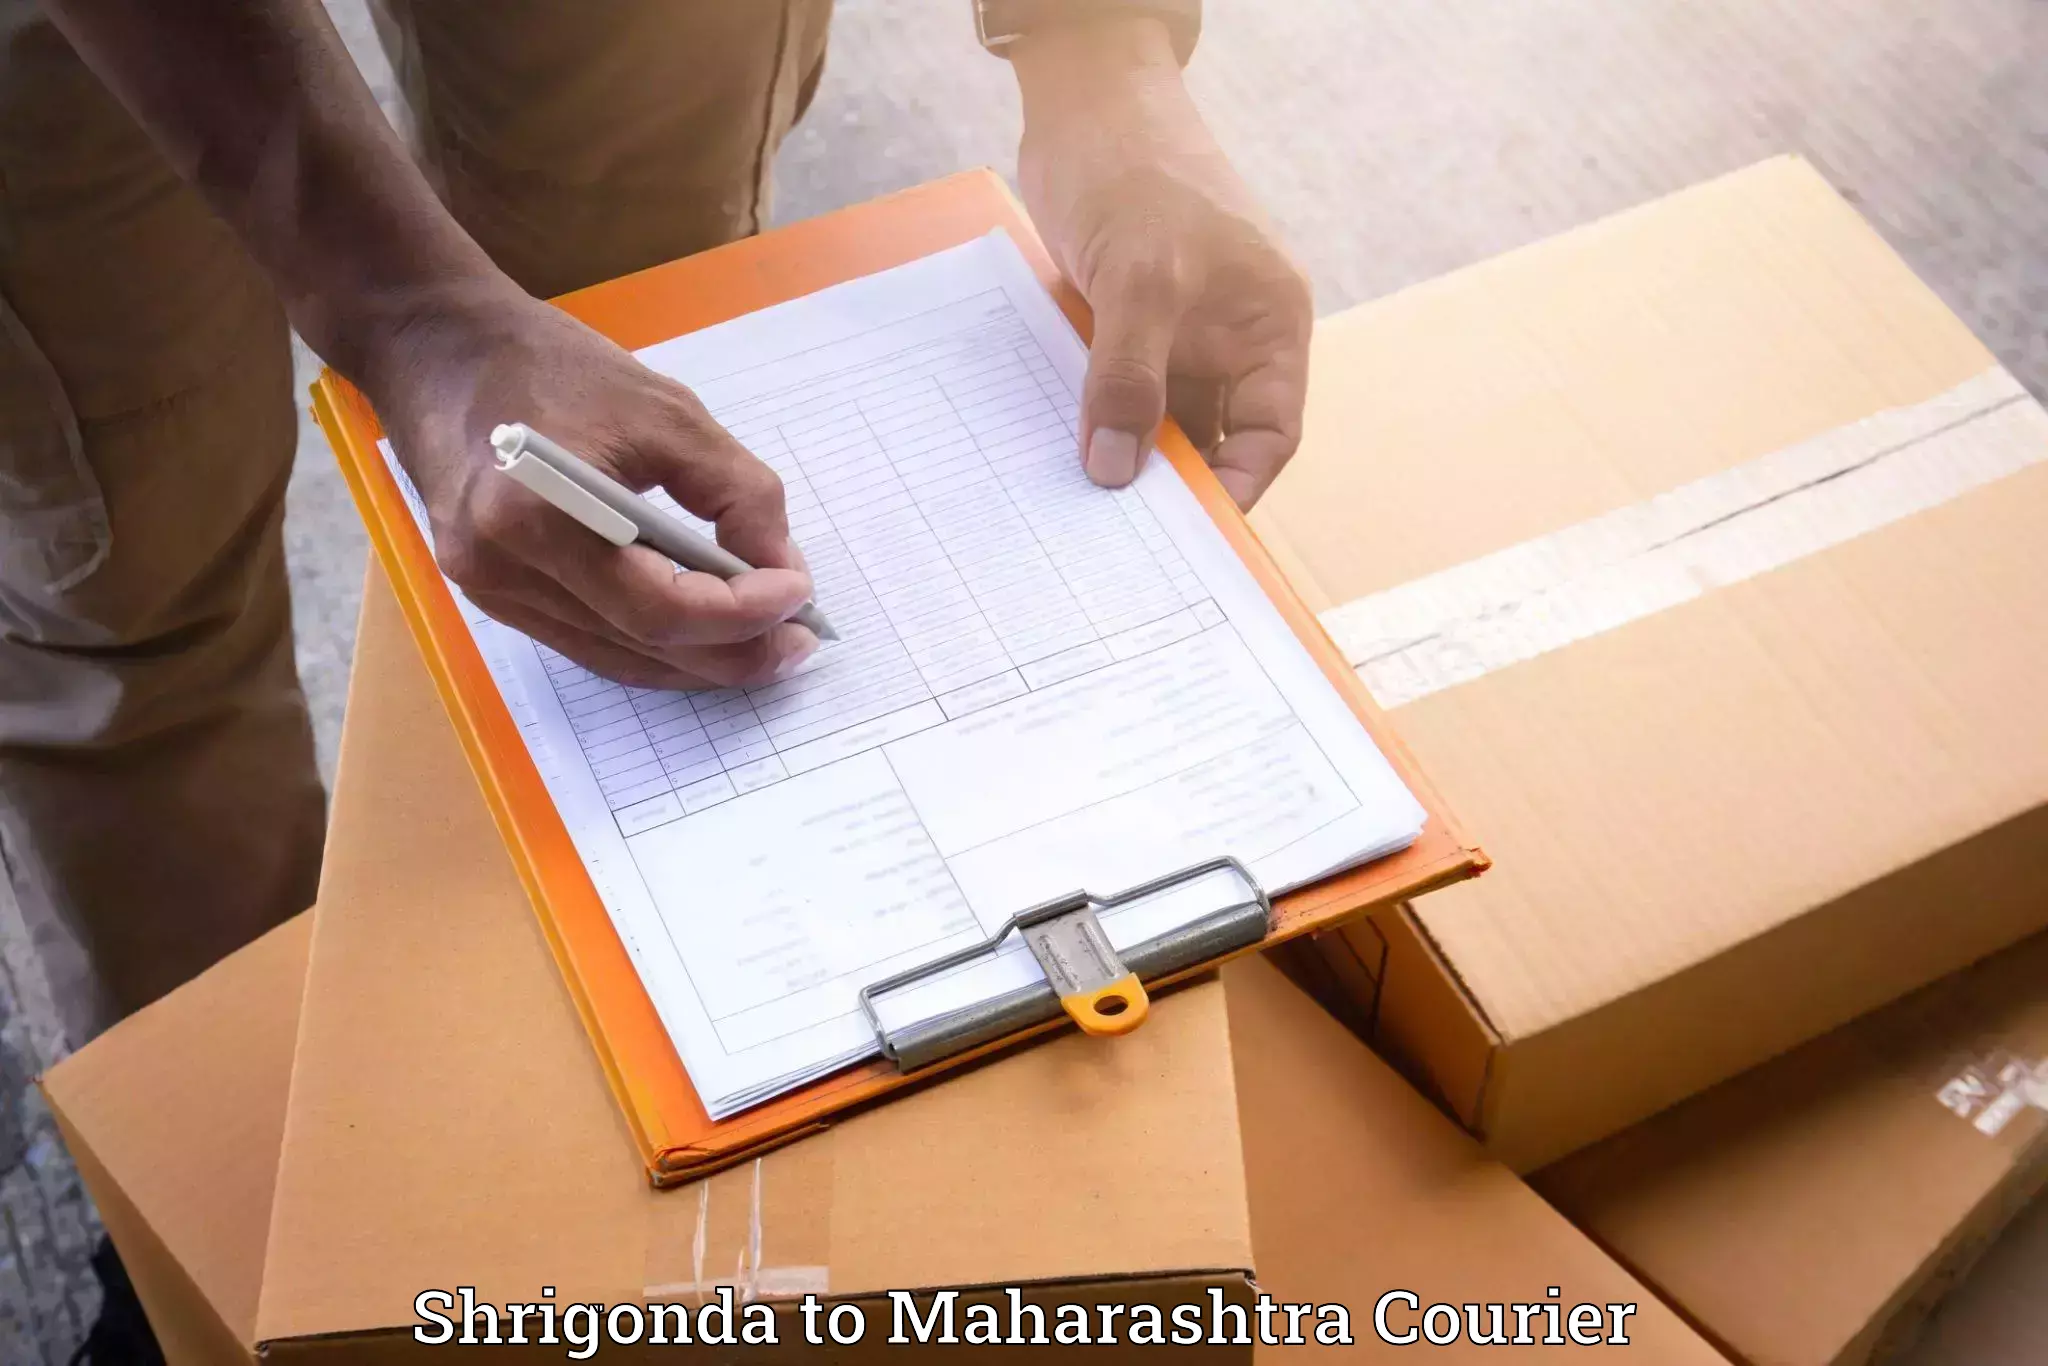 Reliable moving solutions Shrigonda to Maharashtra